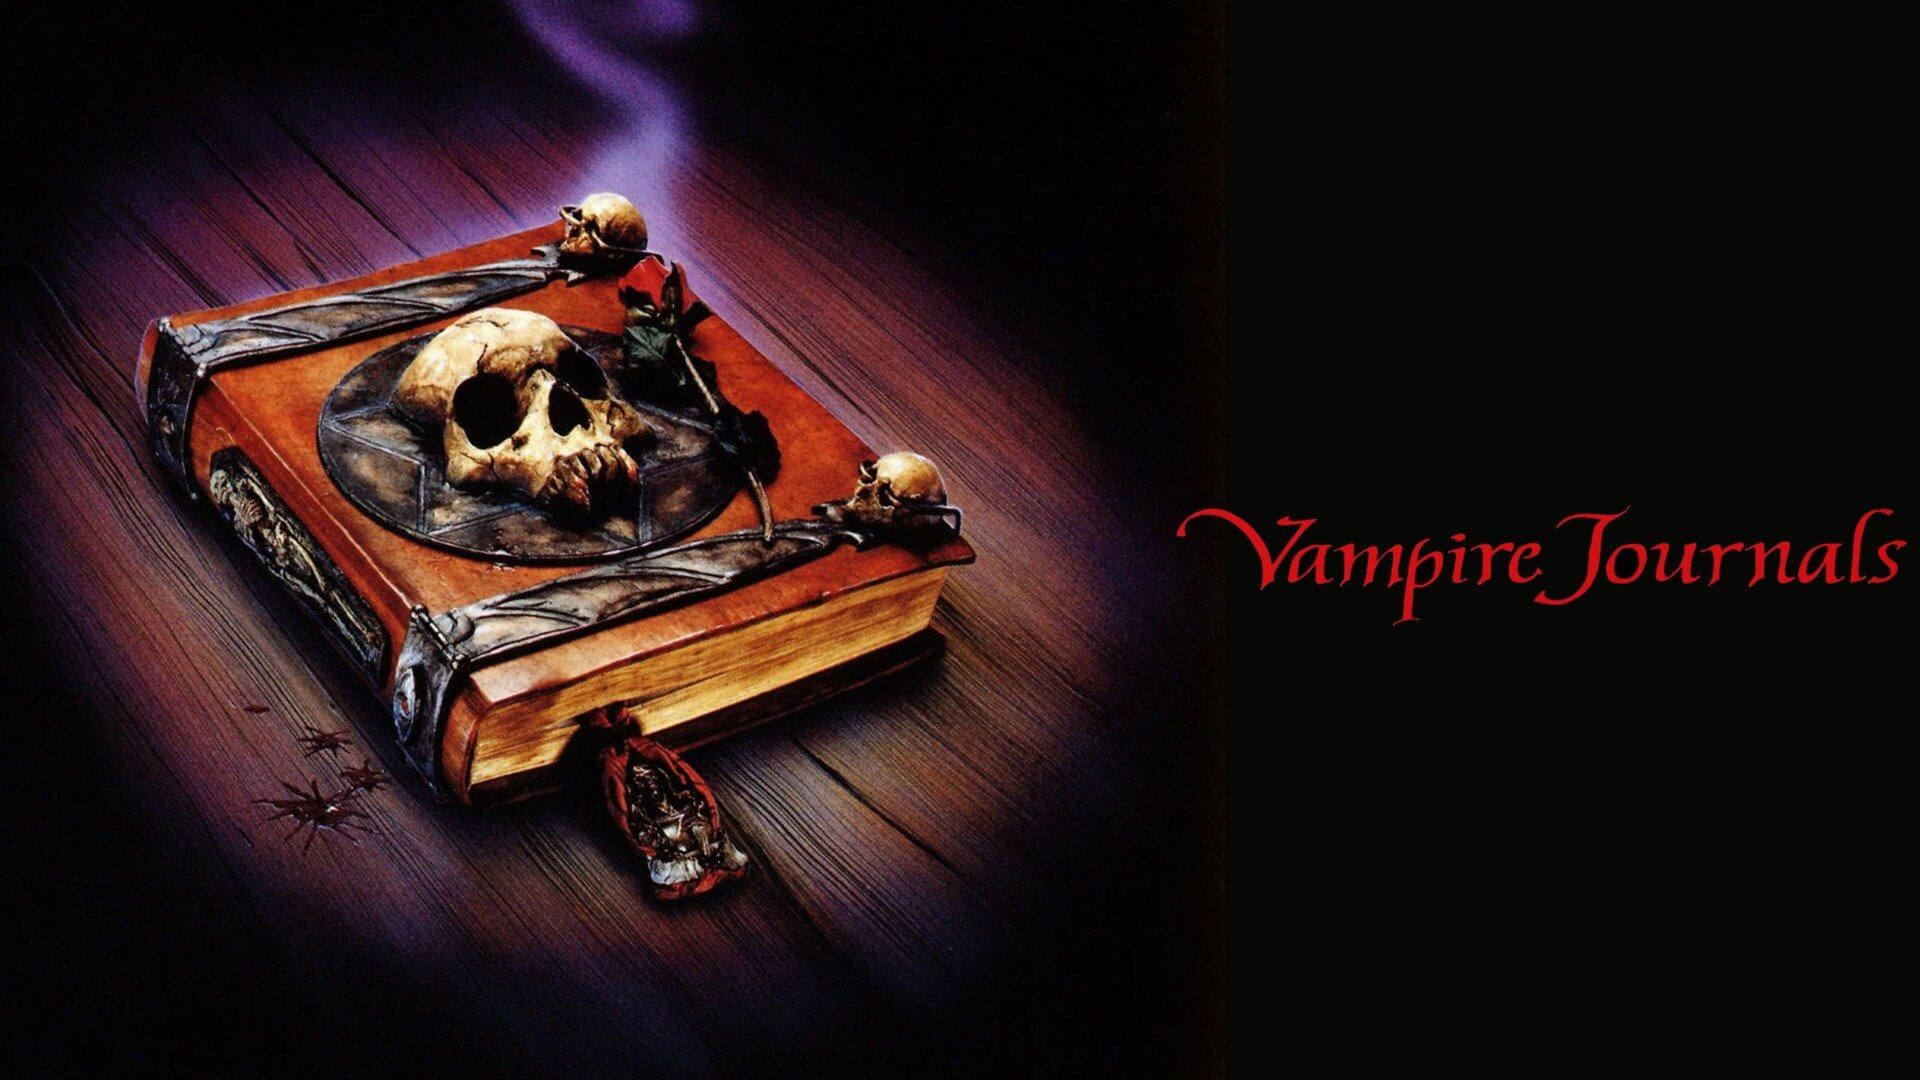 Vampire Journals (Η Εκδίκηση Του Βρυκόλακα) Review